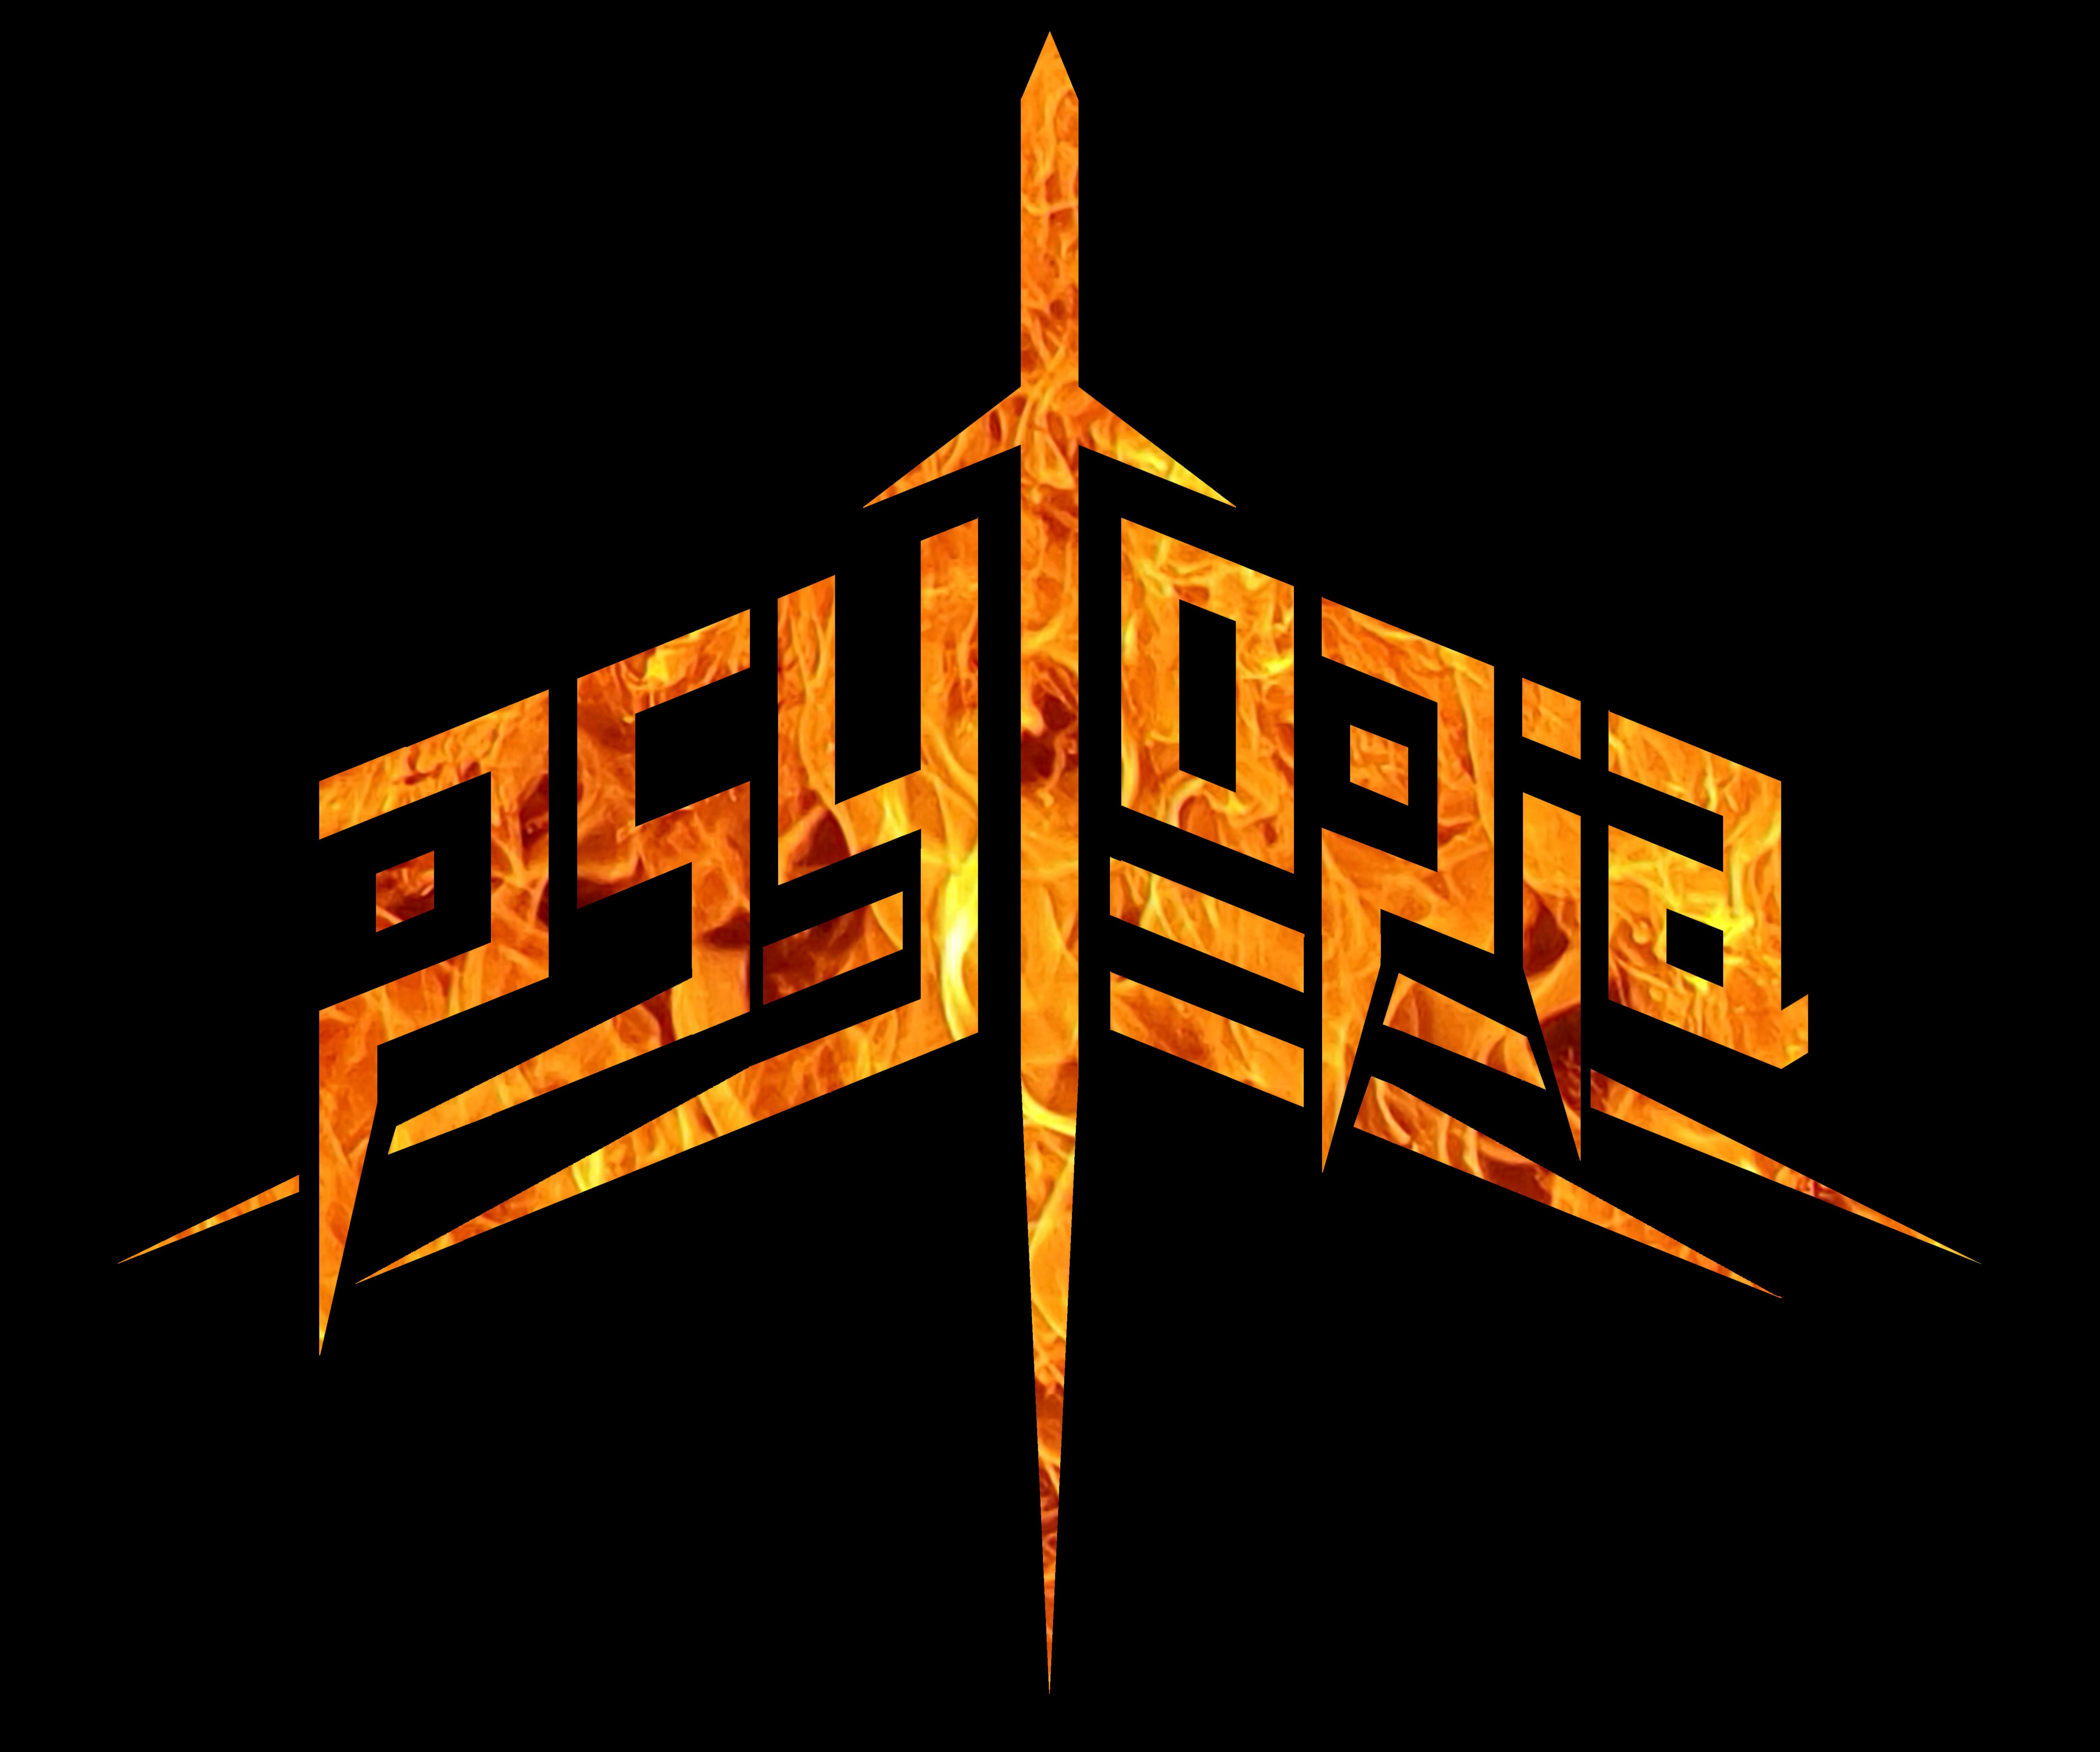 Psytopia